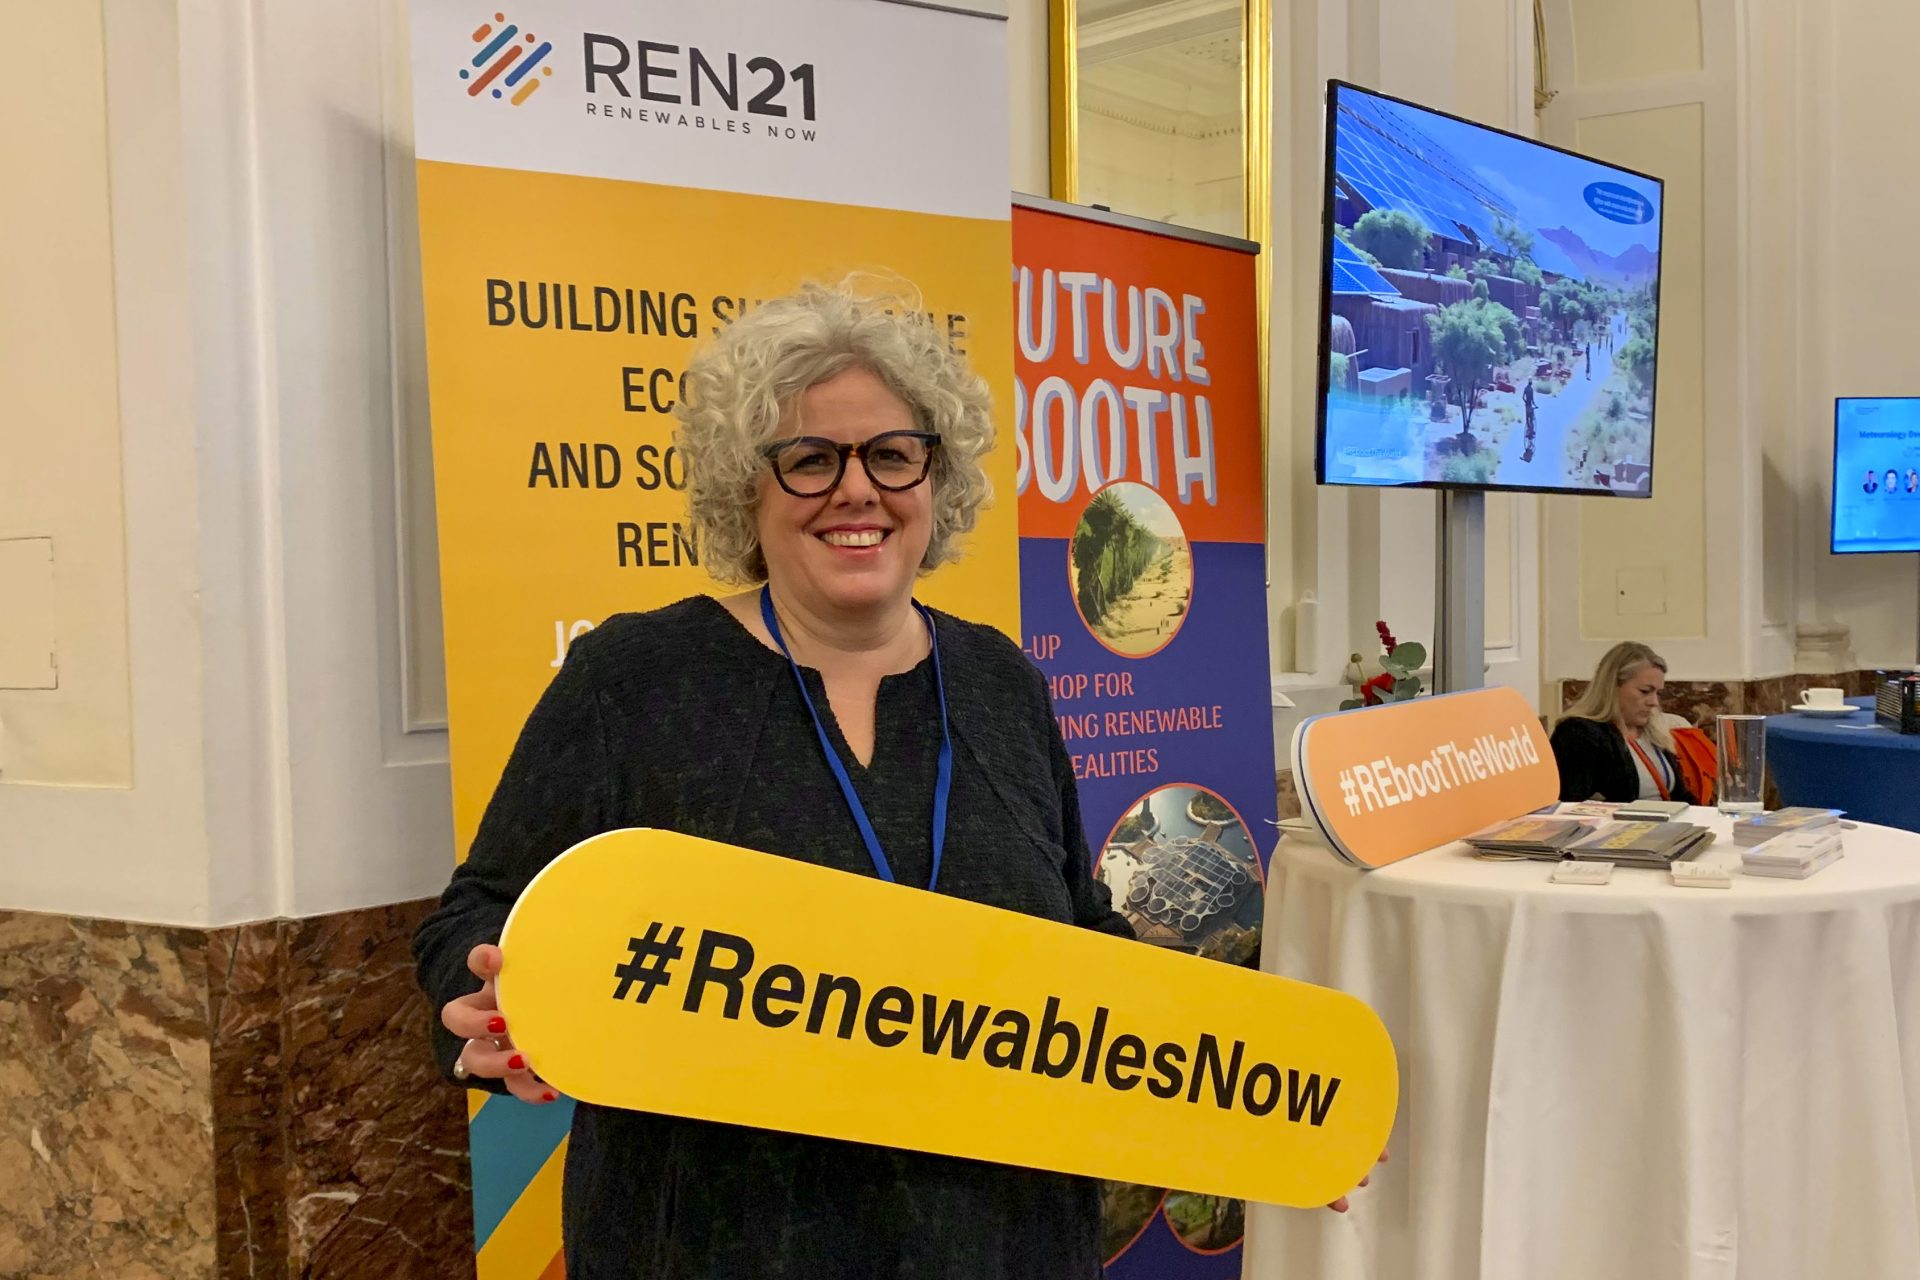 Rana Adib, la directora ejecutiva de REN21, sostiene un cartel con el hashtag RenewablesNow (Renovables ahora), este viernes durante la celebración del Foro Internacional de Energía y Clima celebrado en Viena esta semana. EFE/ Clara Antón